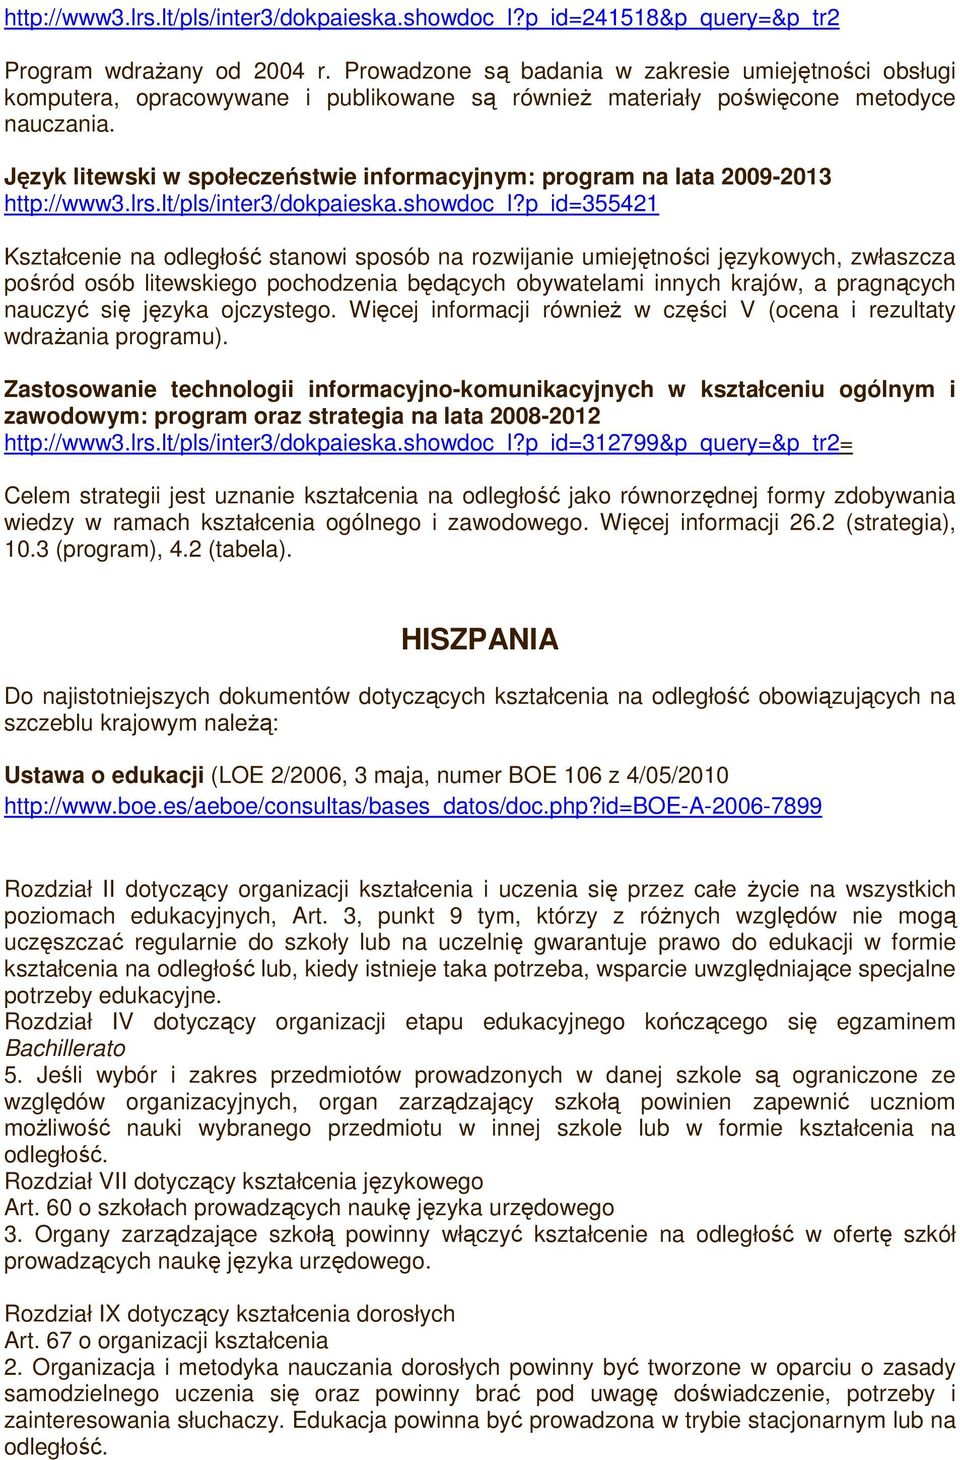 Język litewski w społeczeństwie informacyjnym: program na lata 2009-2013 http://www3.lrs.lt/pls/inter3/dokpaieska.showdoc_l?